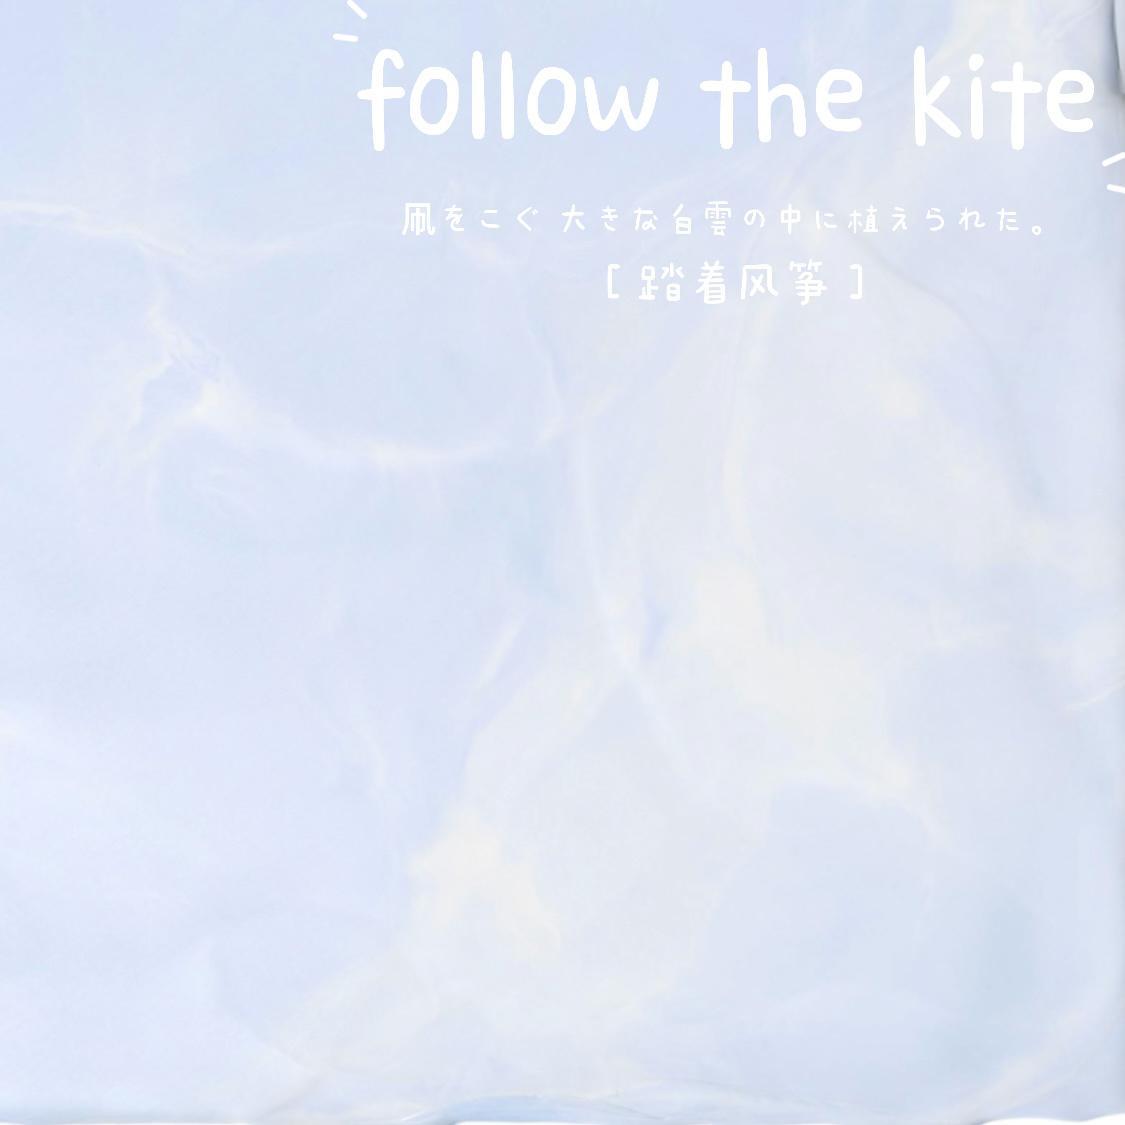 陈越龙 - 踏着风筝with kite travel